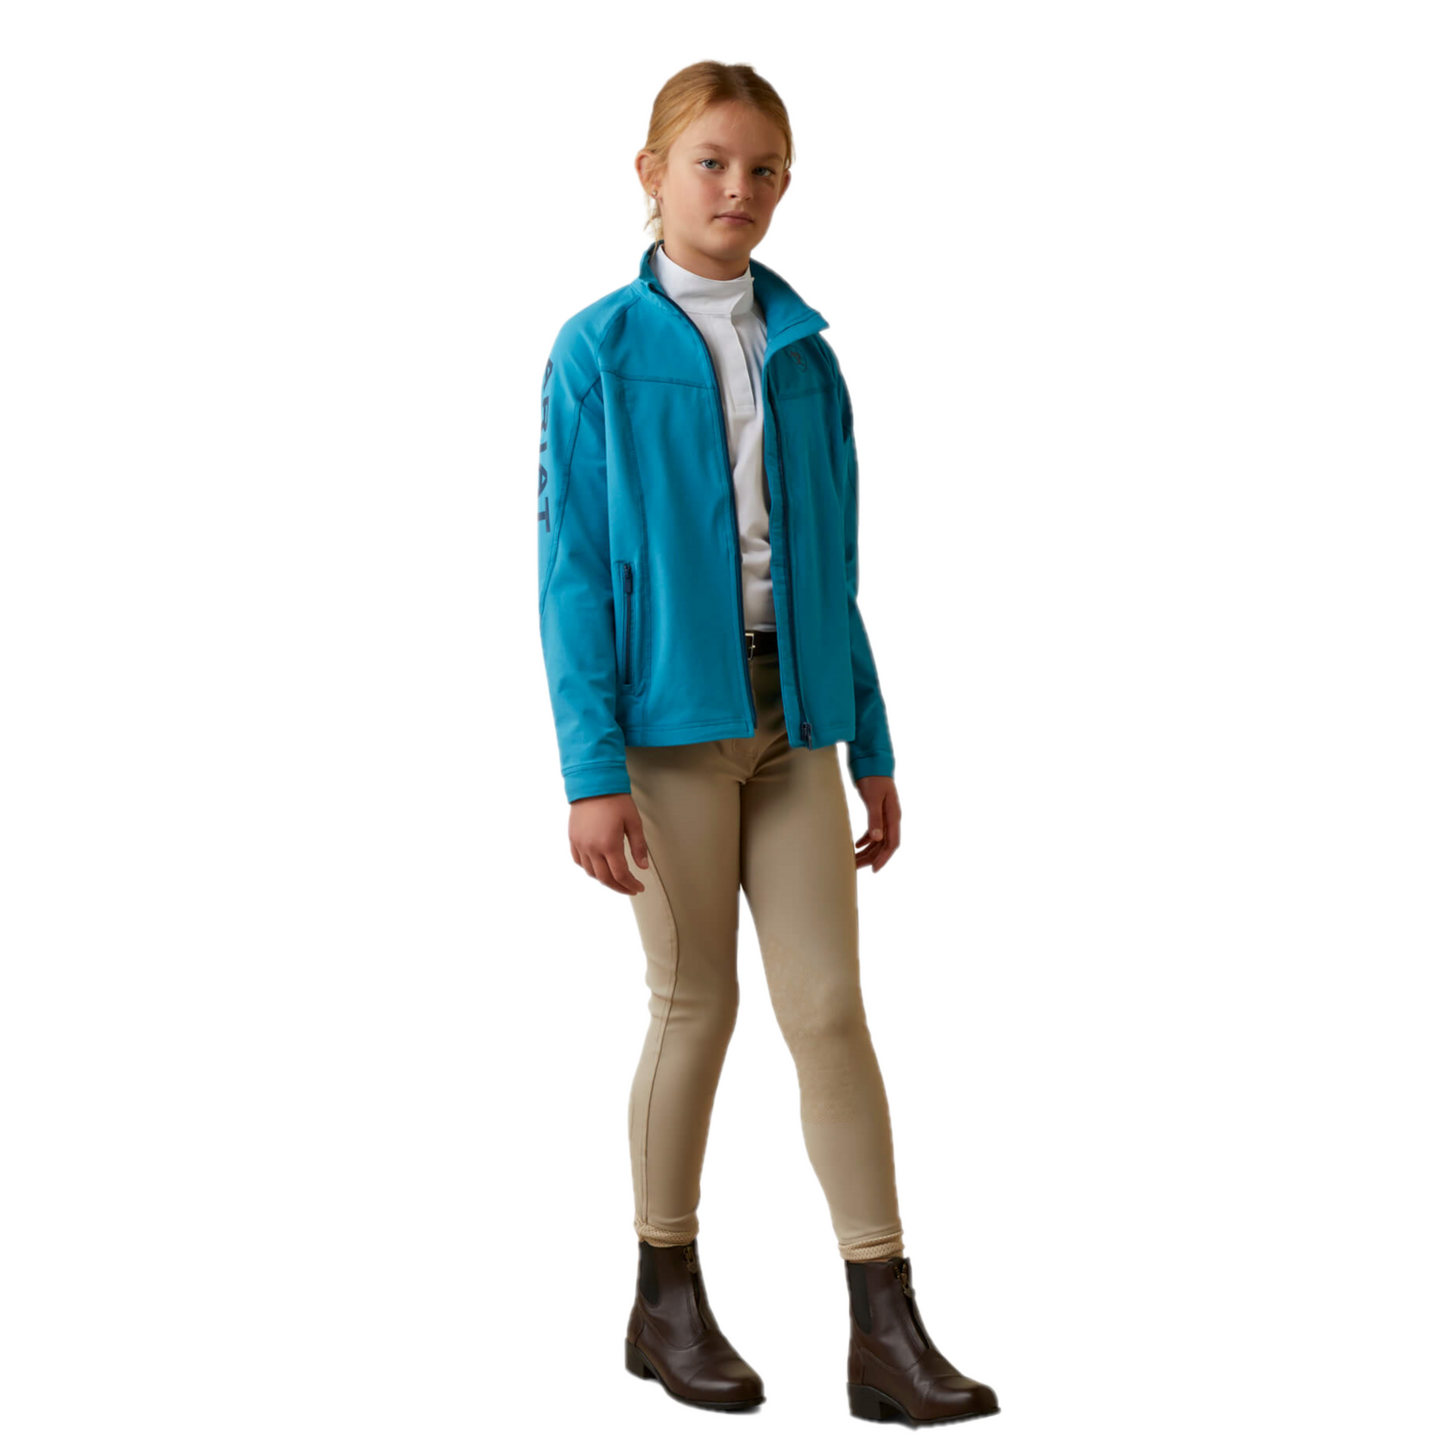 Ariat® Youth Girl's Agile Mosaic Blue Softshell Jacket 10043445